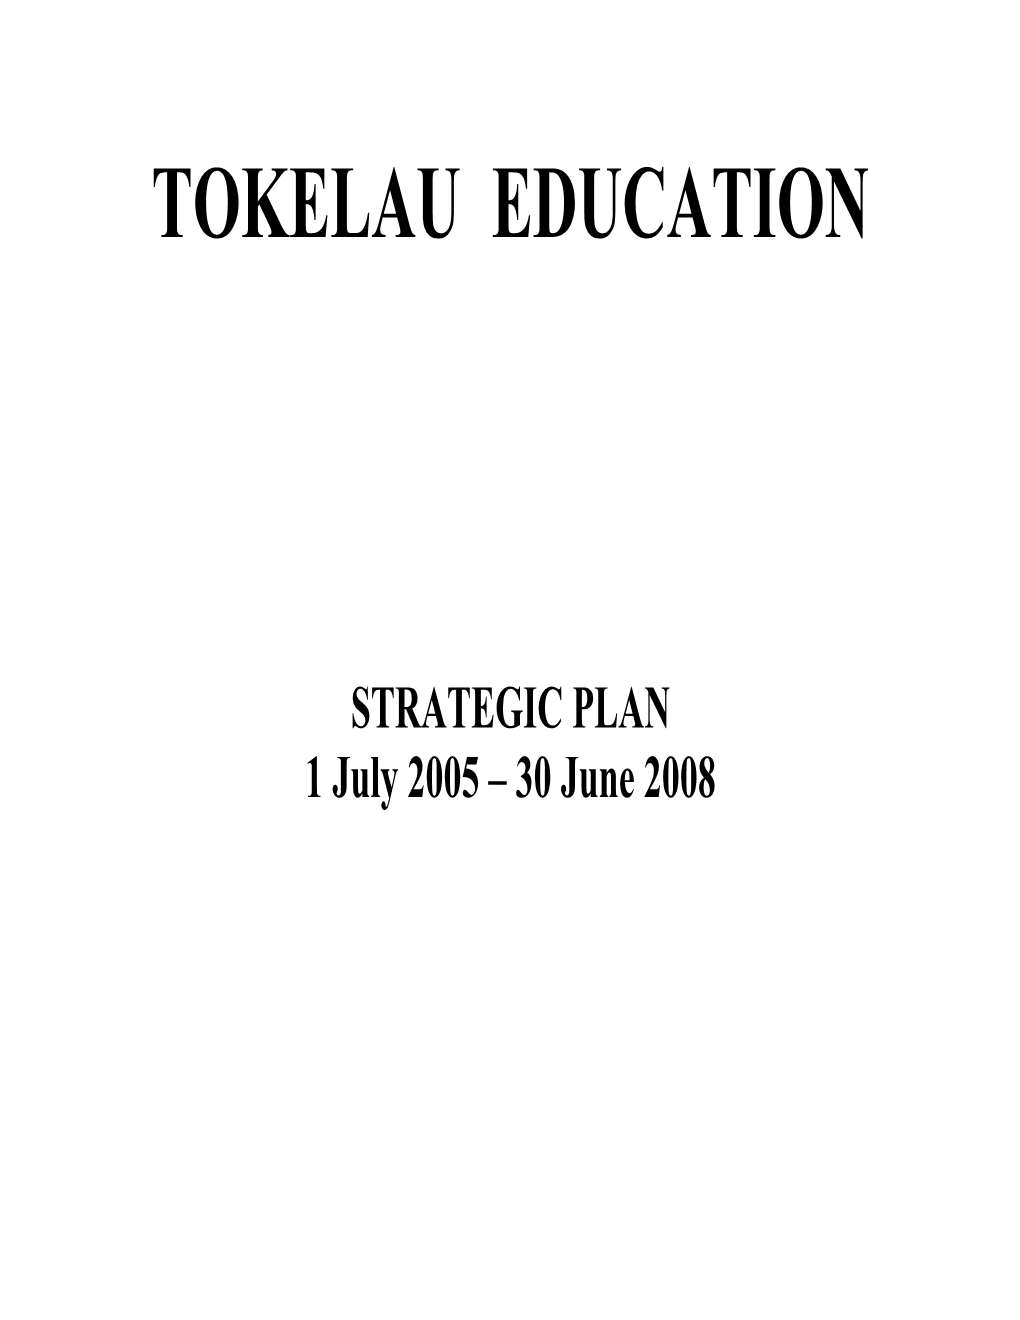 Tokelau Education